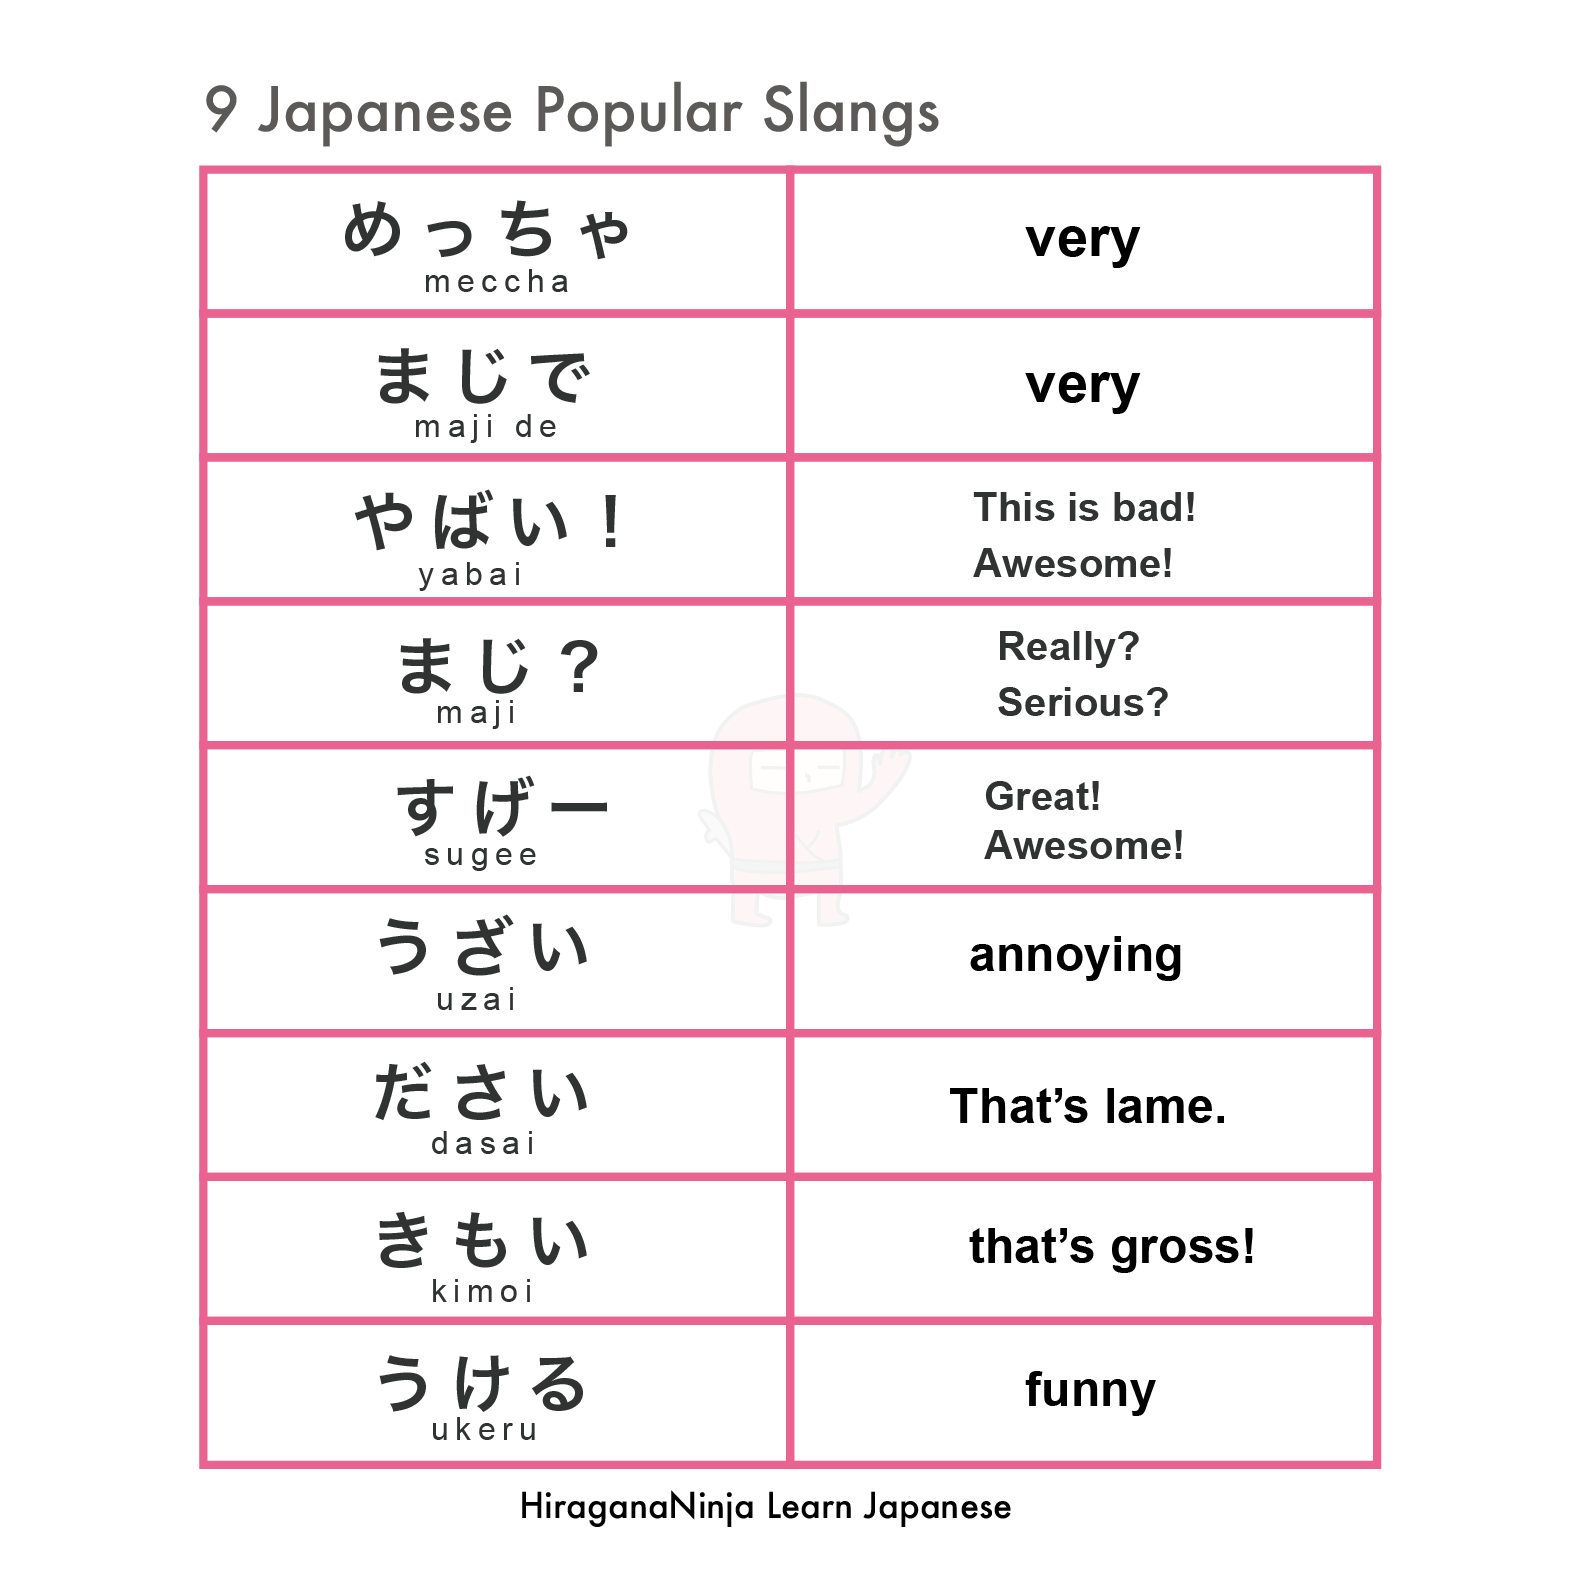 10 Japanese Slang words - Casual Japanese ひ ら が な 忍 者 HiraganaNinja.